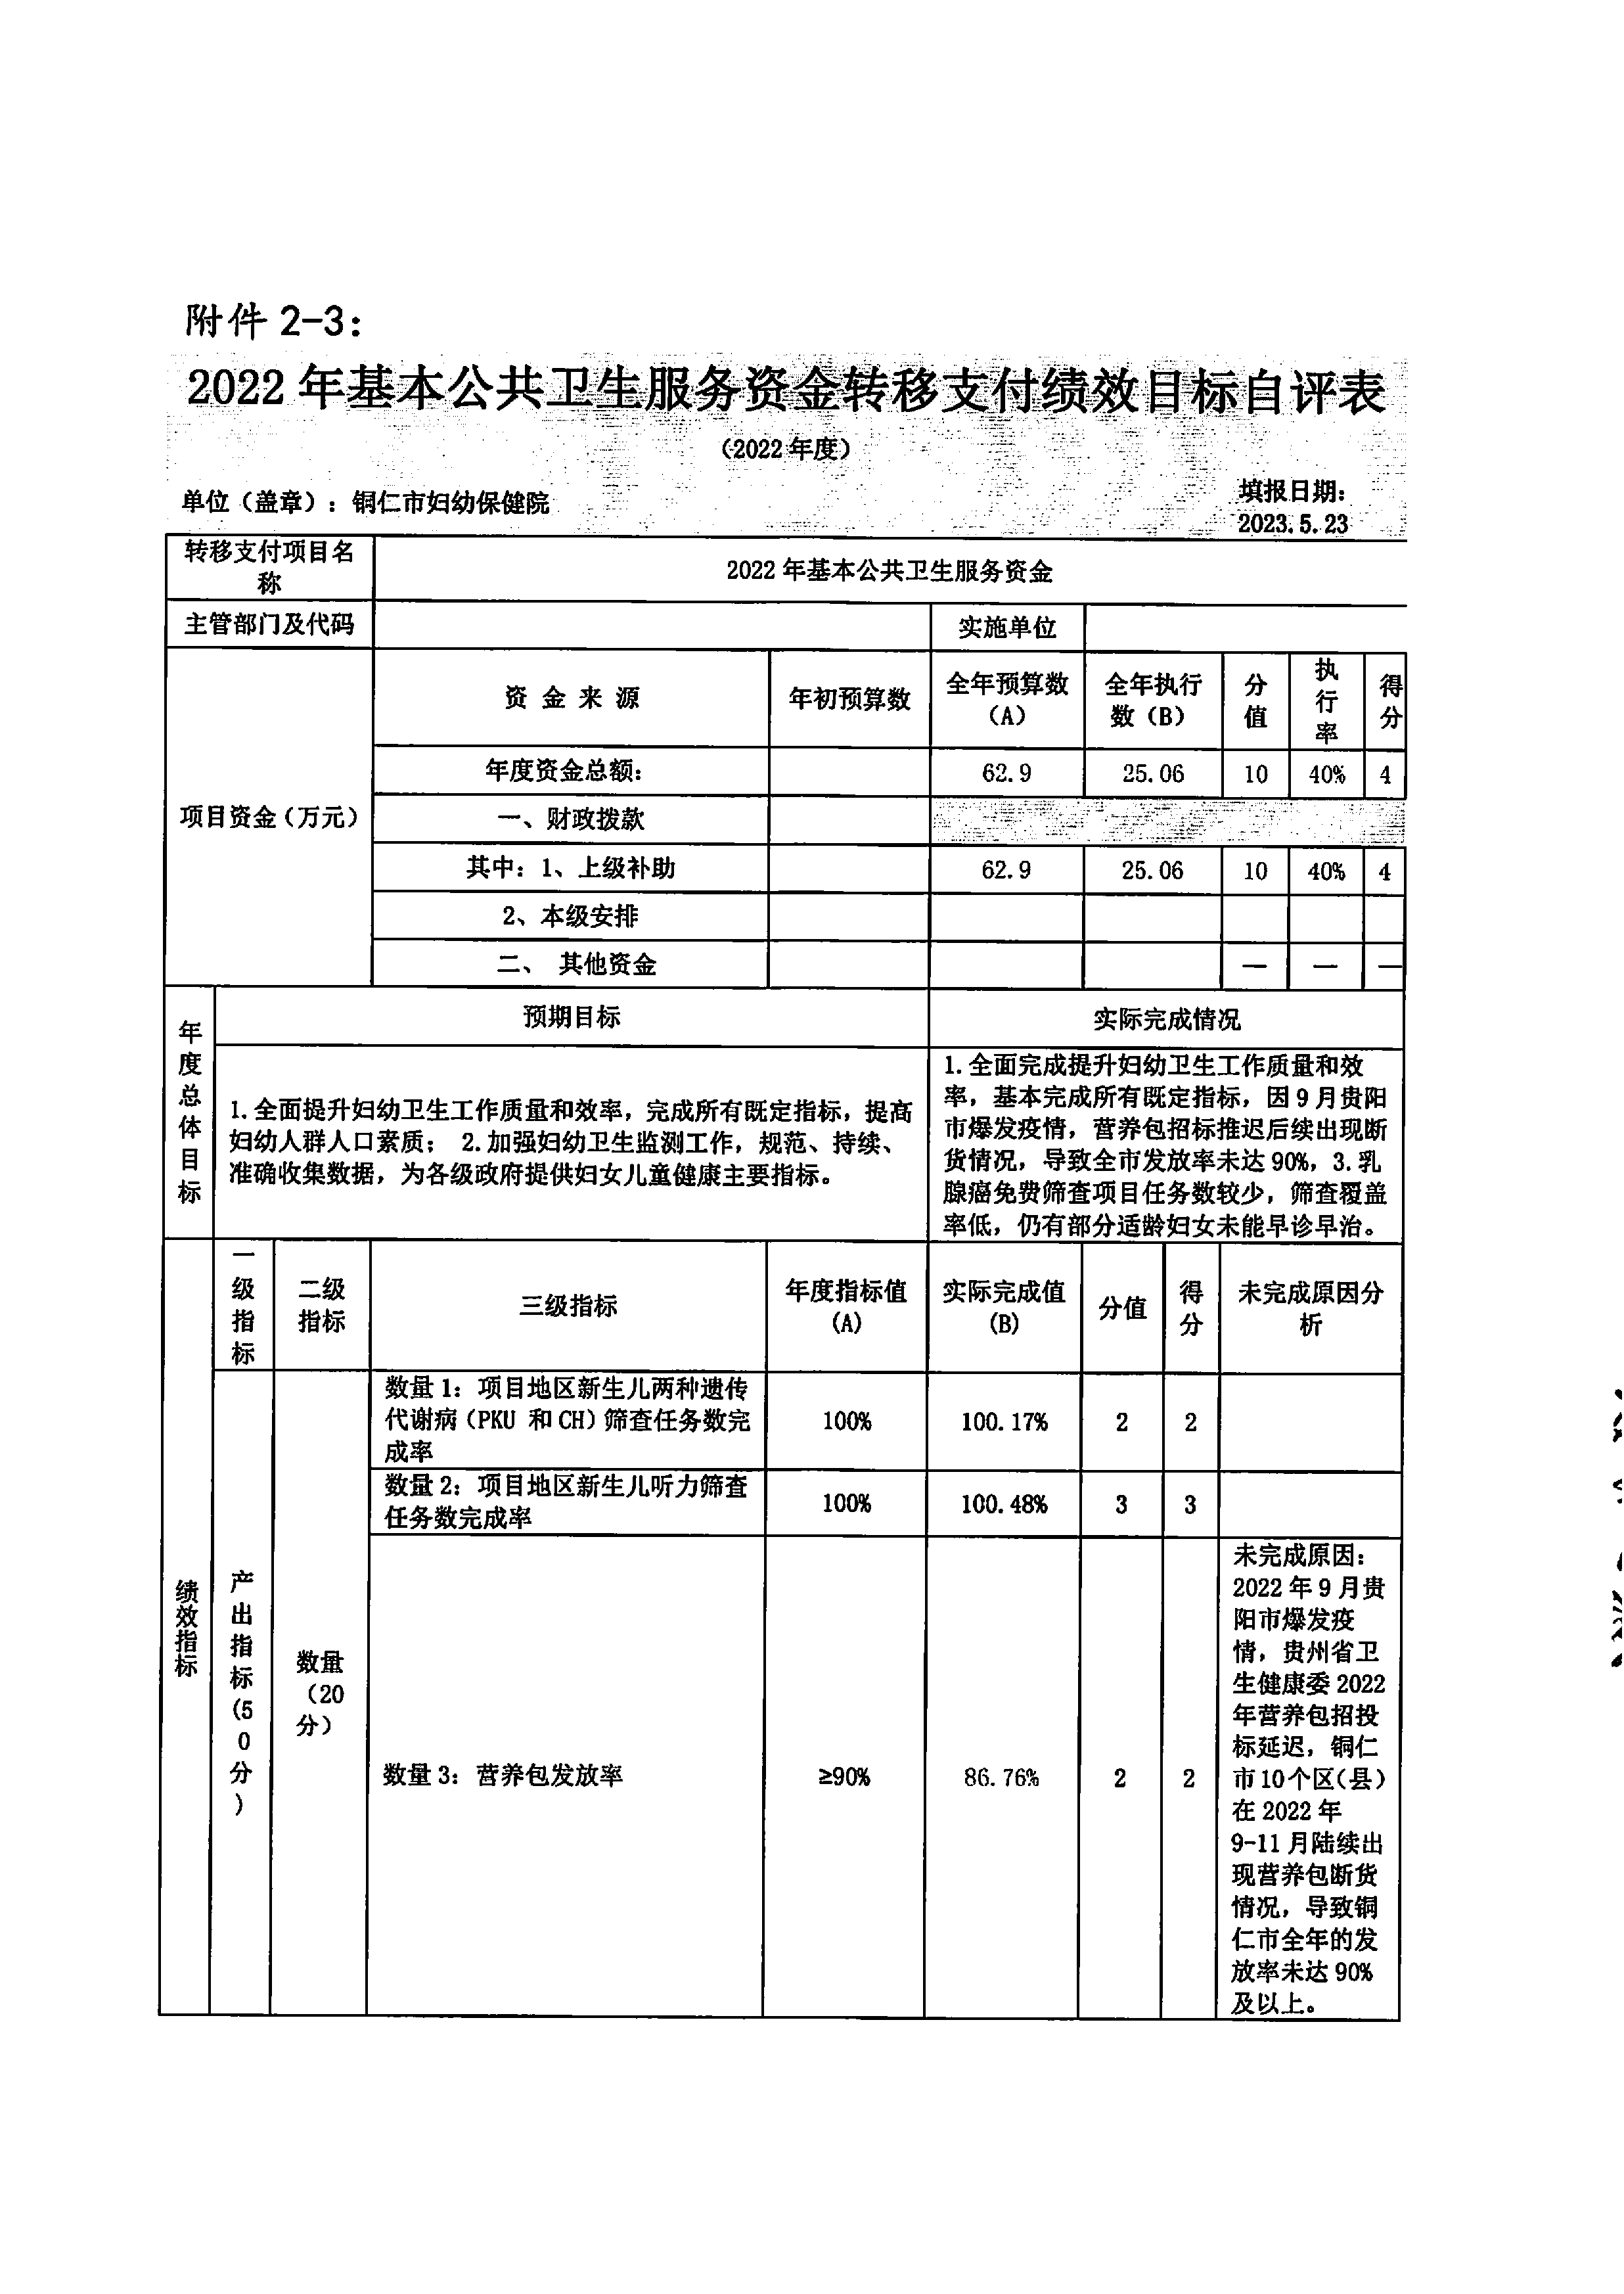 铜仁市妇幼保健院2022年度部门决算公开说明